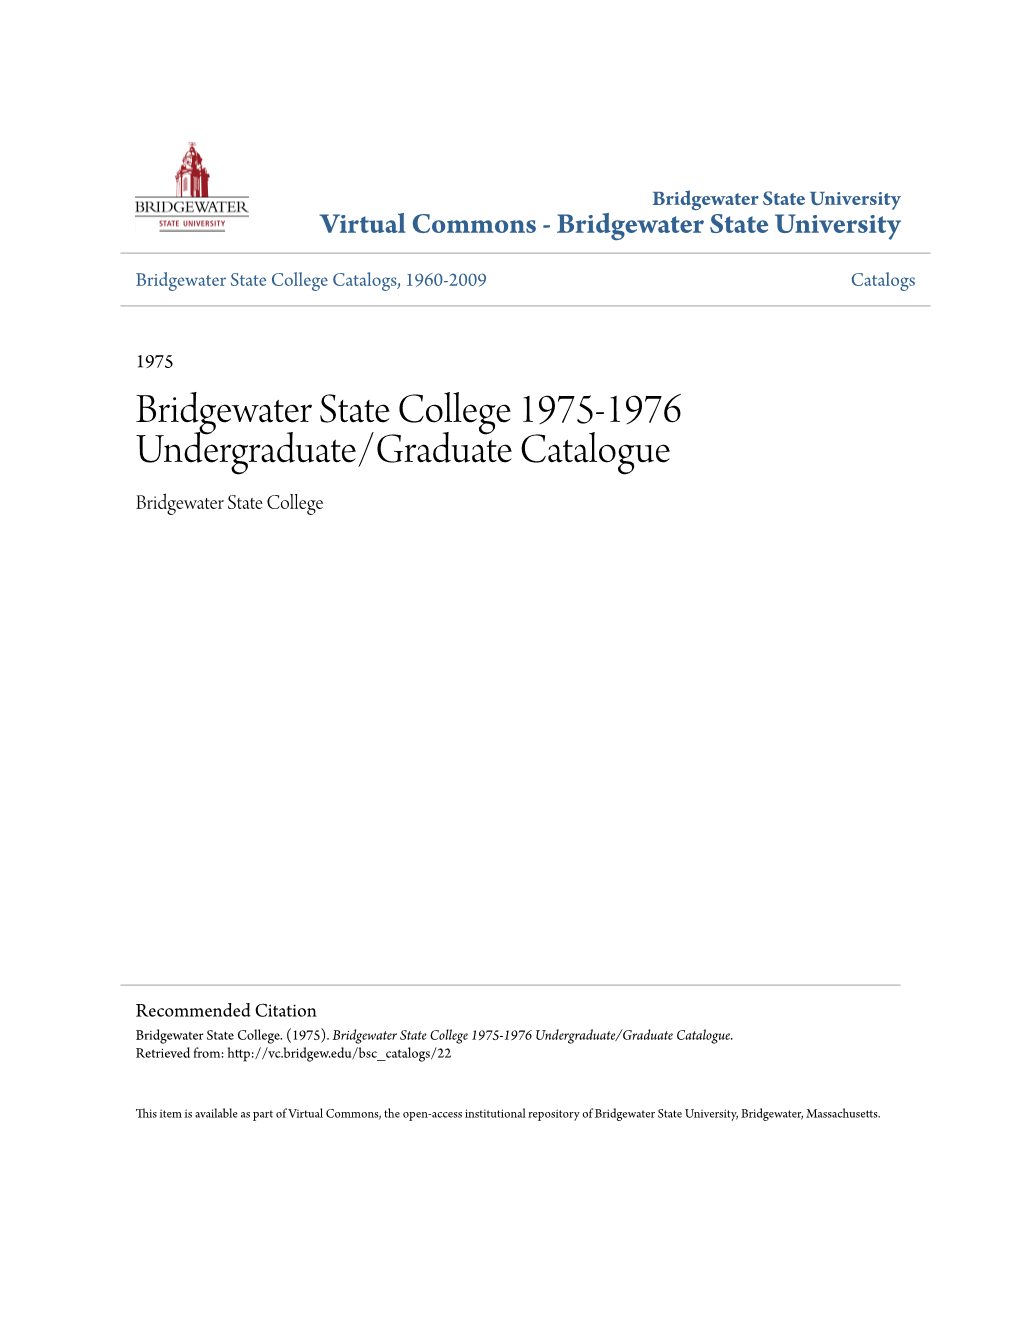 Bridgewater State College 1975-1976 Undergraduate/Graduate Catalogue Bridgewater State College